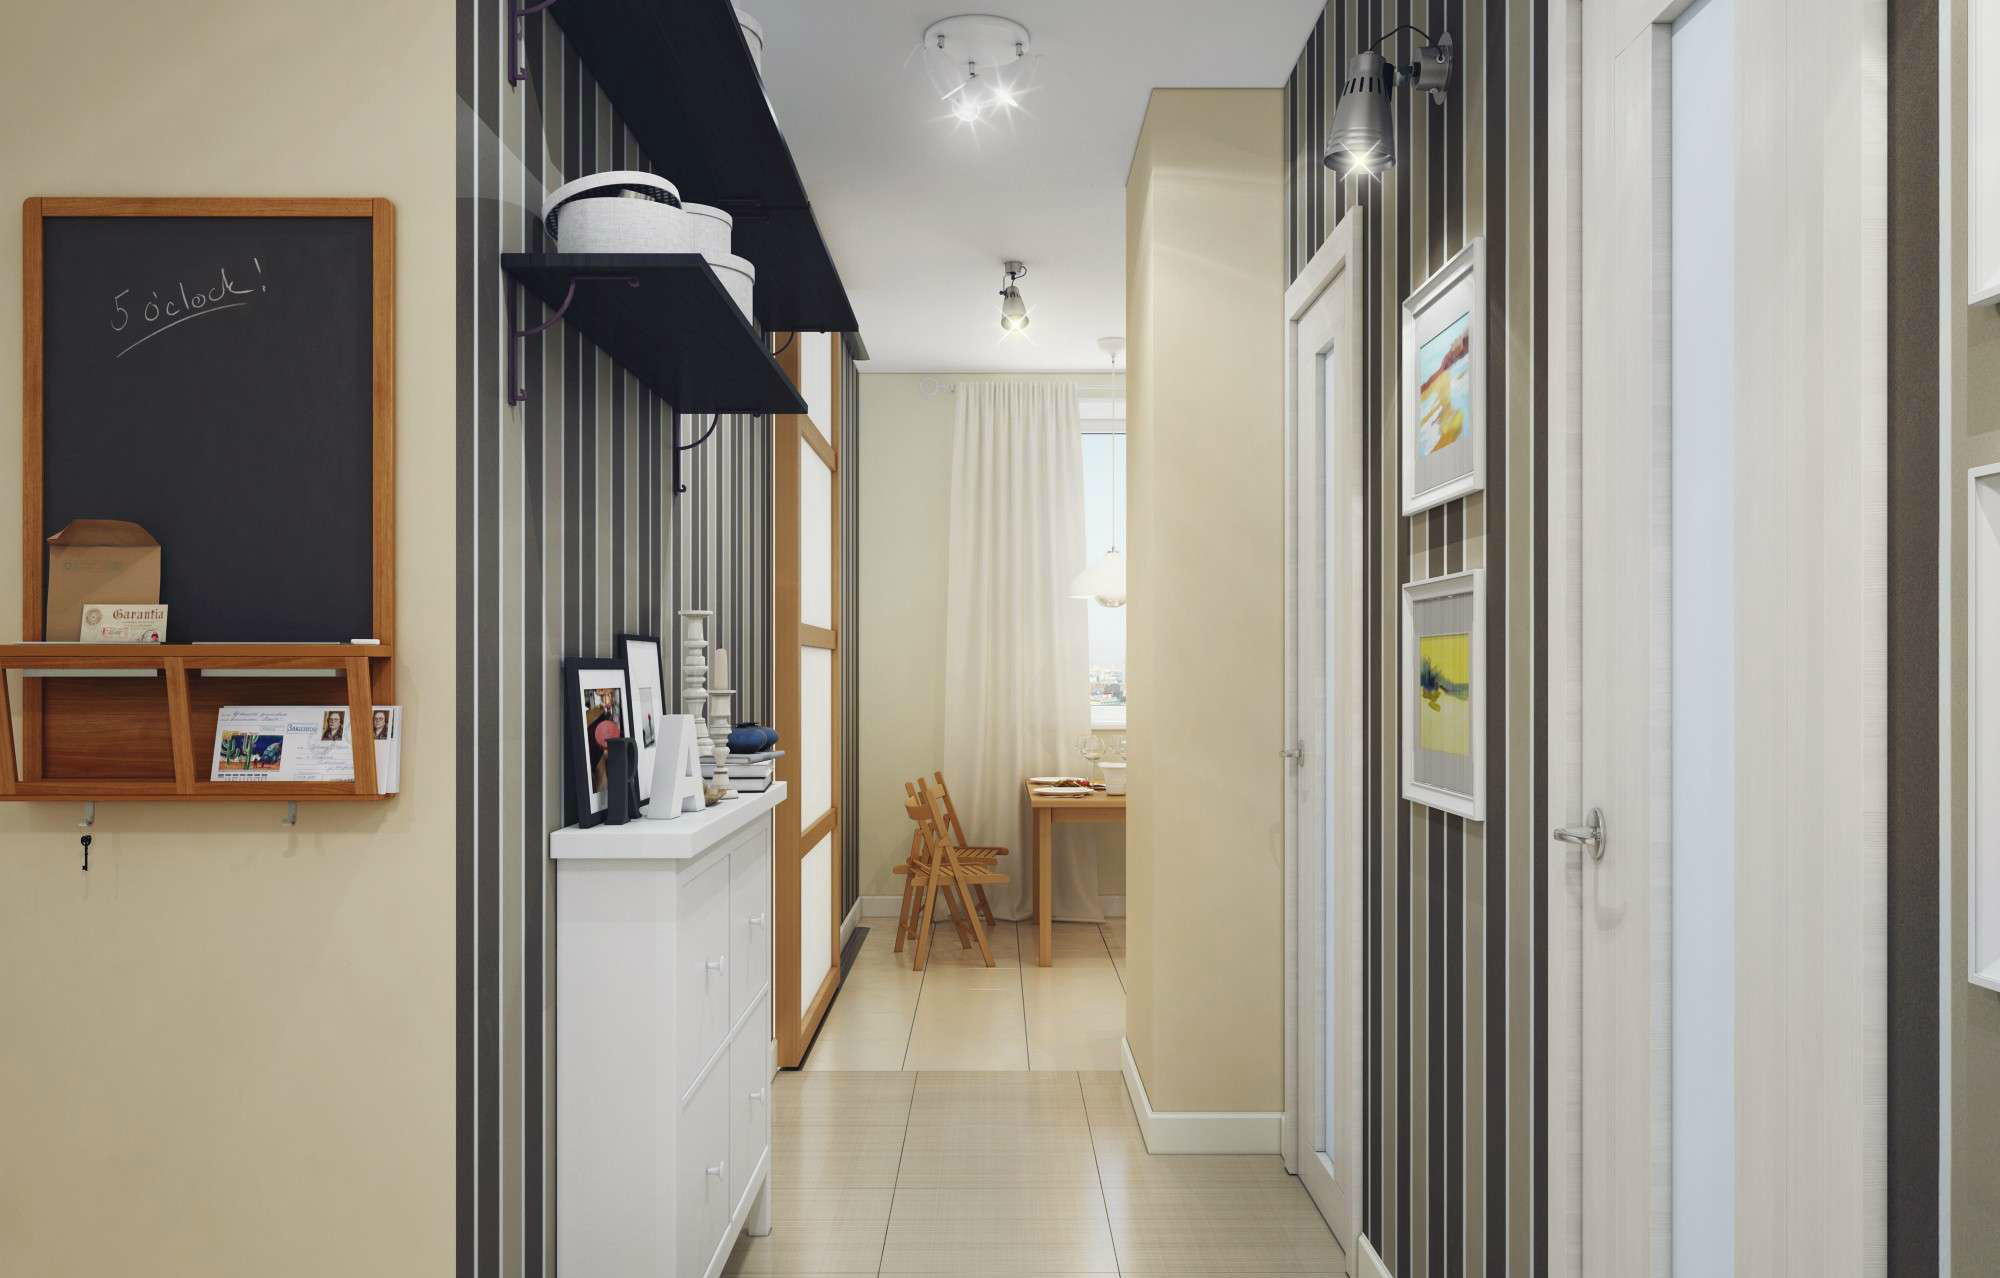 Дизайн коридора в квартире (реальные фото): красивые интерьеры, идеи для ремонта